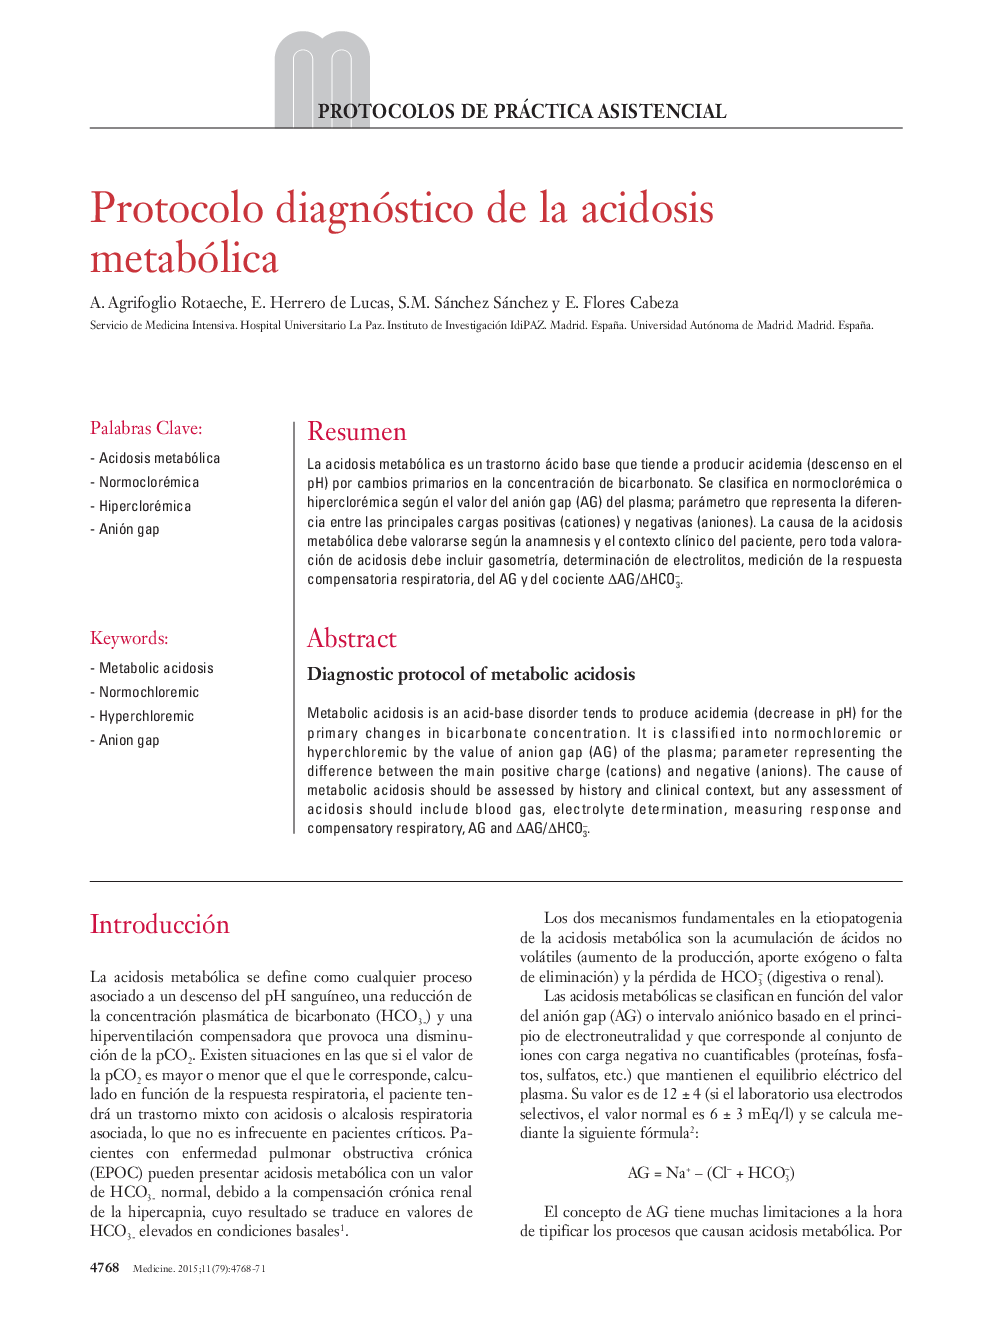 Protocolo diagnóstico de la acidosis metabólica